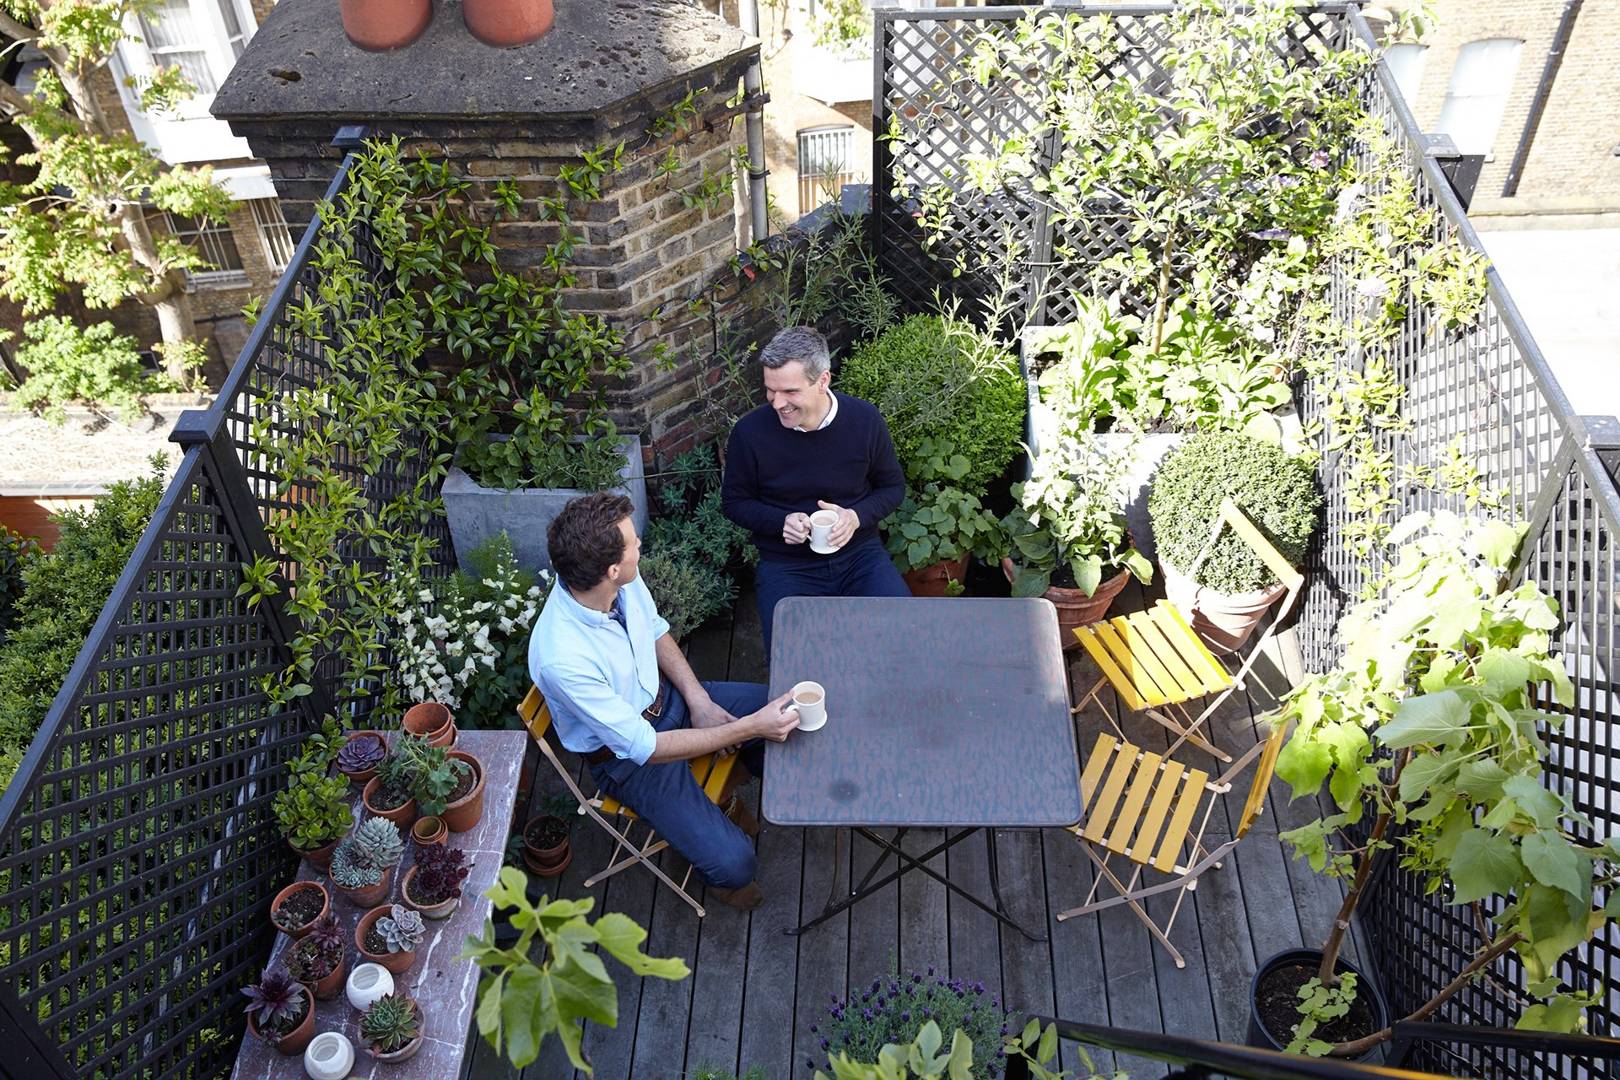 balcony garden ideas | house & garden